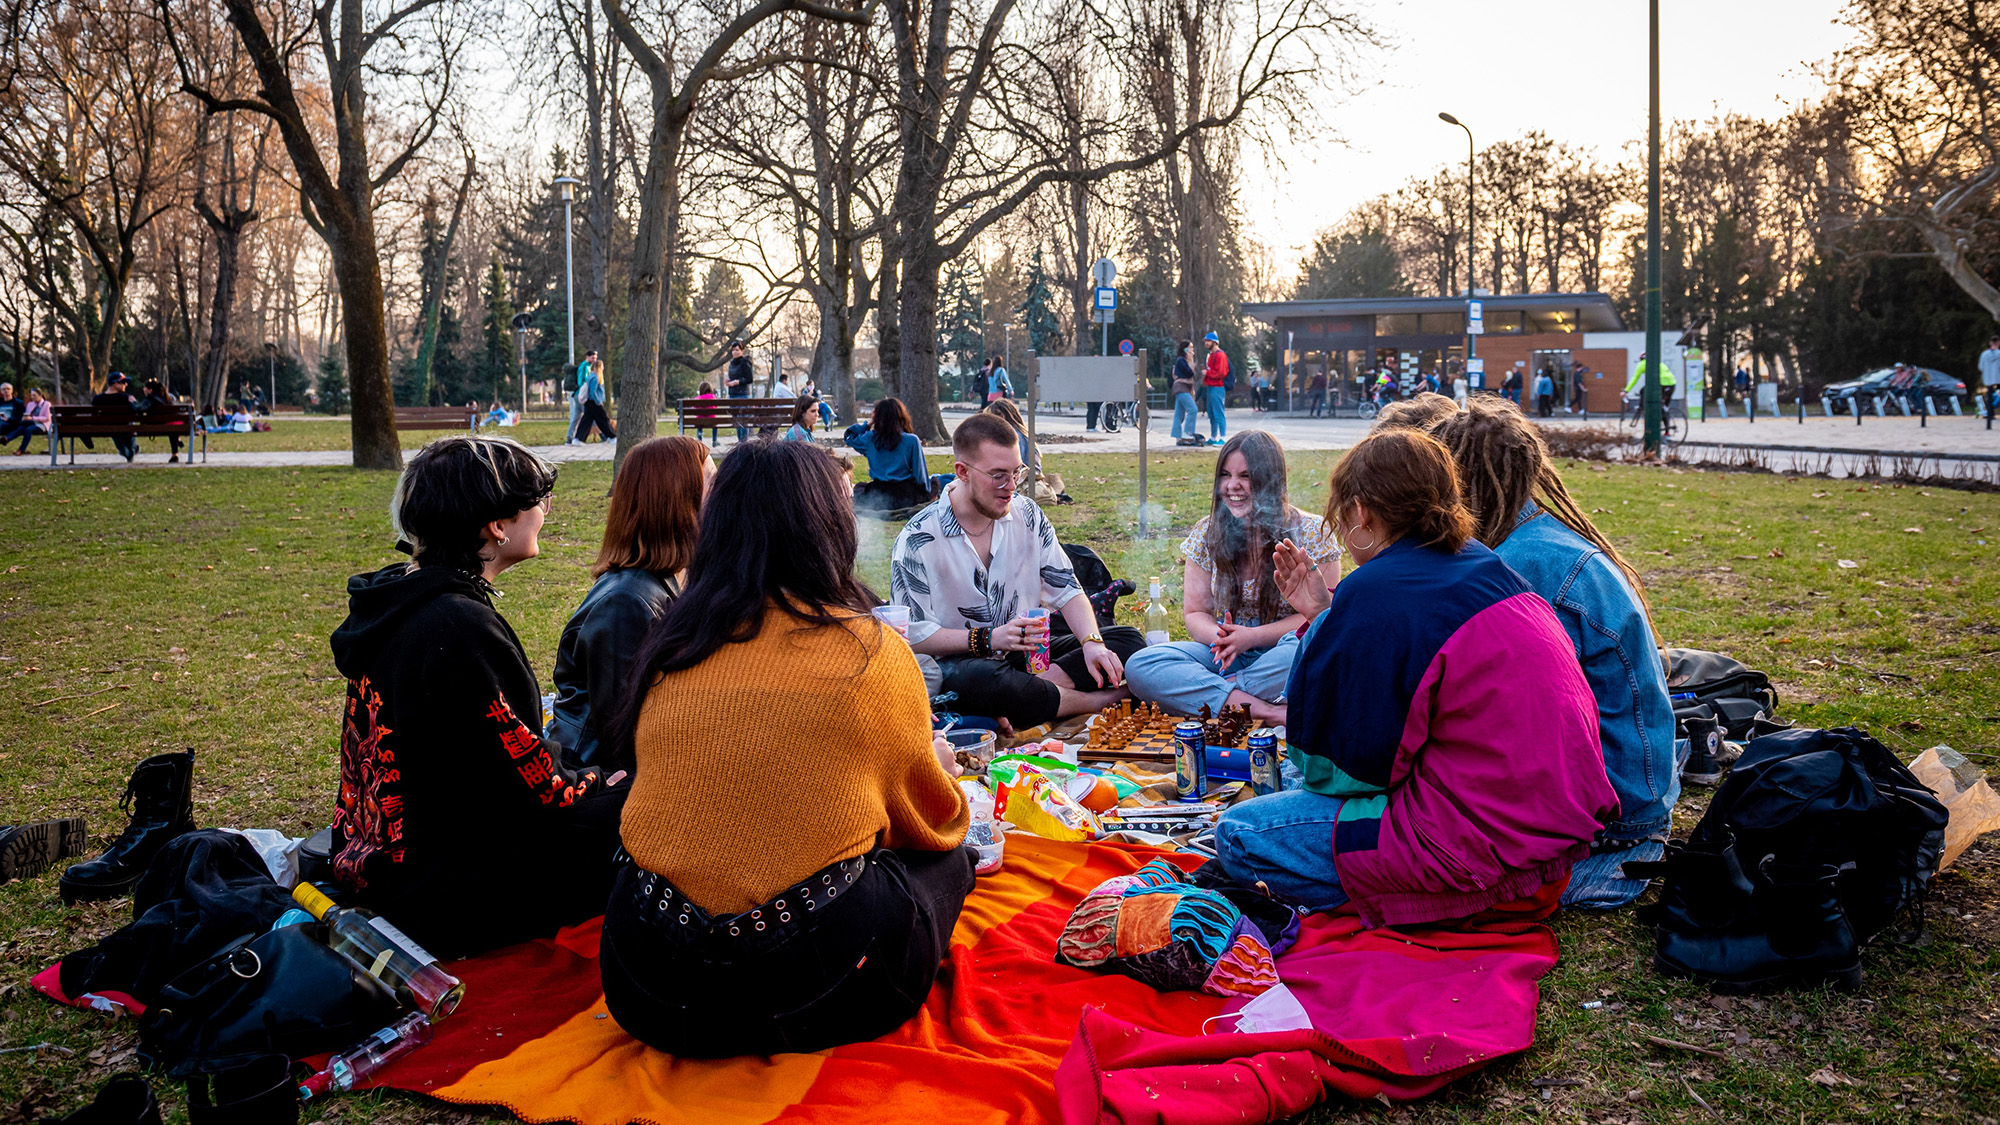 Margit-szigeten sörözve, Duna-parton ücsörögve élvezik a budapestiek a kora tavaszt – galéria